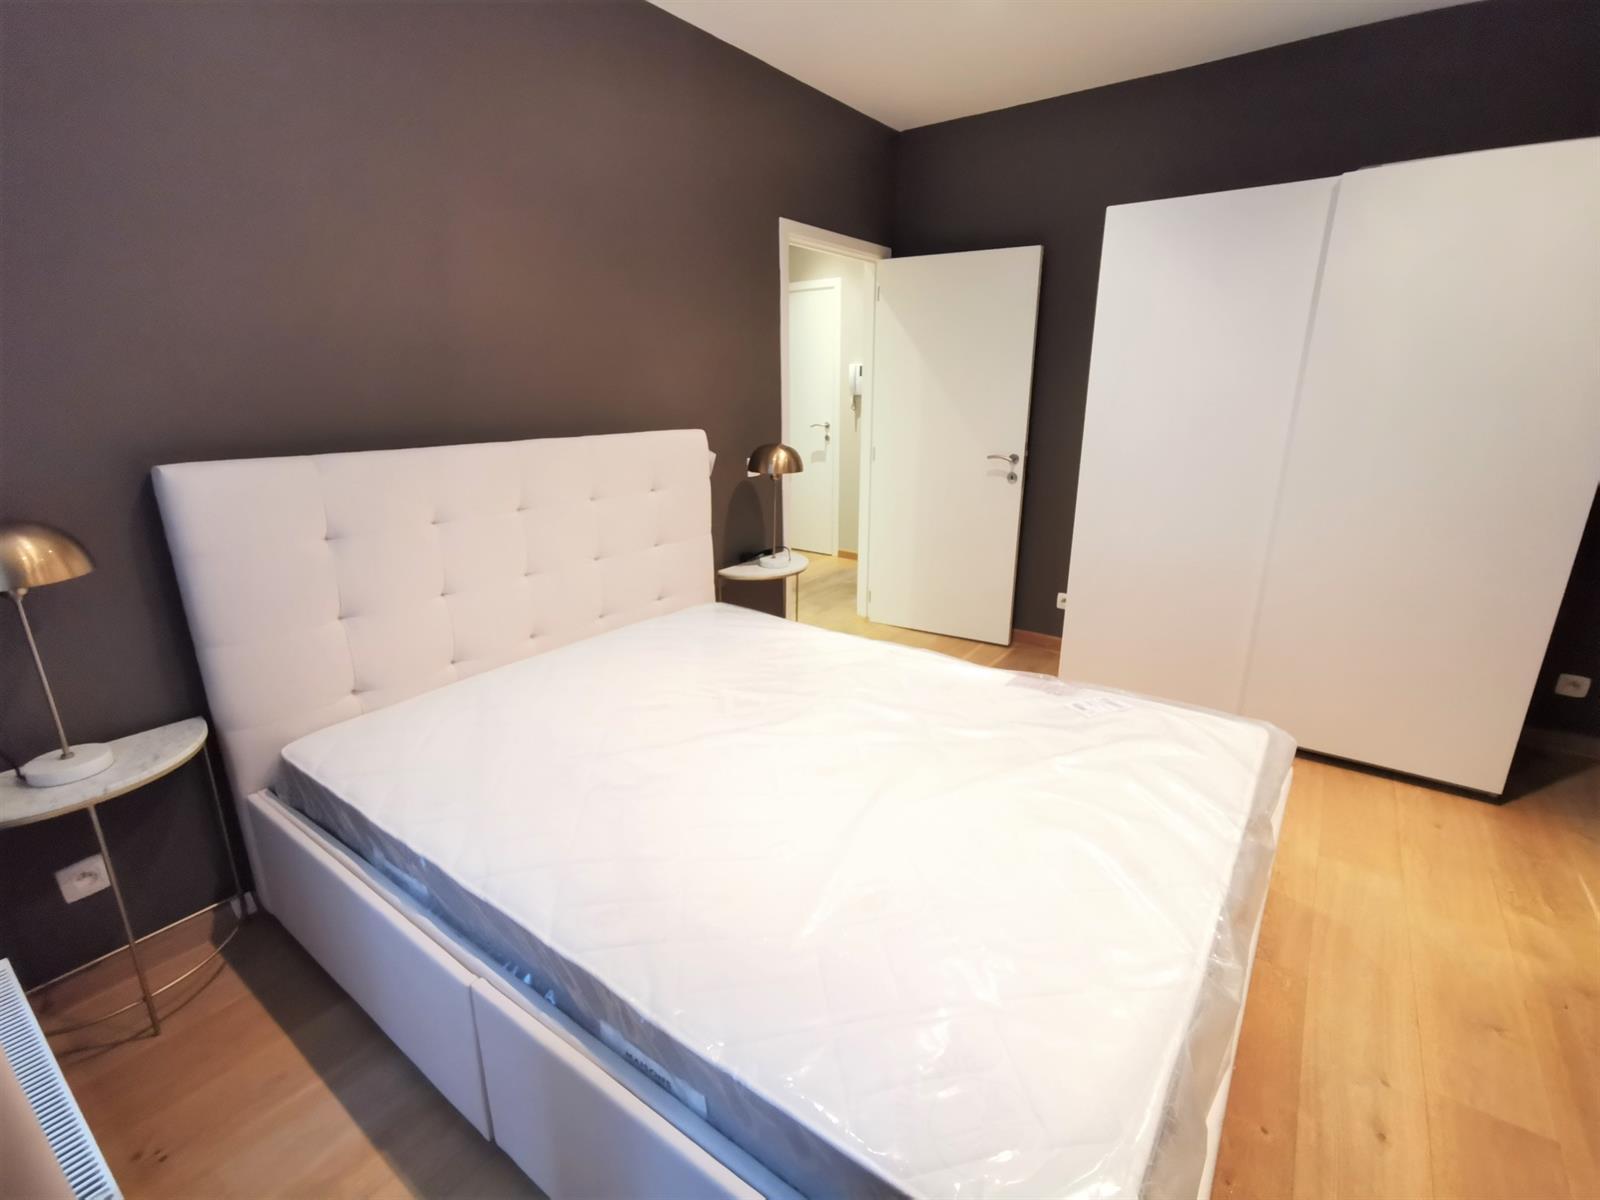 Minimes - Amplio piso en Bruselas para expats